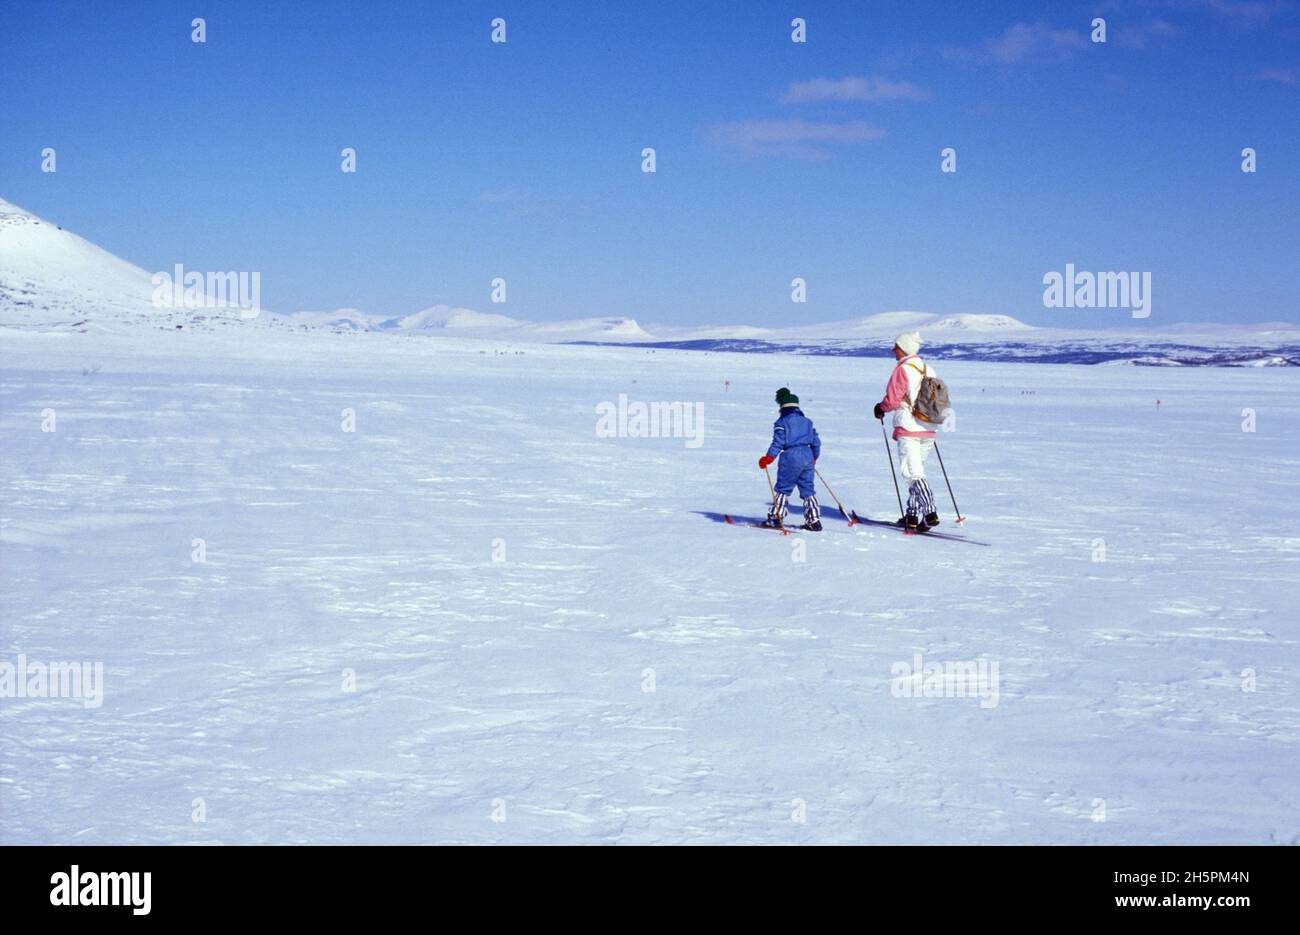 HÄRJEDALEN, SVEZIA NEL 1987, ANALOGICO. Paesaggio invernale in piena luce del sole in montagna. Persone non identificate. Uso editoriale. Foto Stock